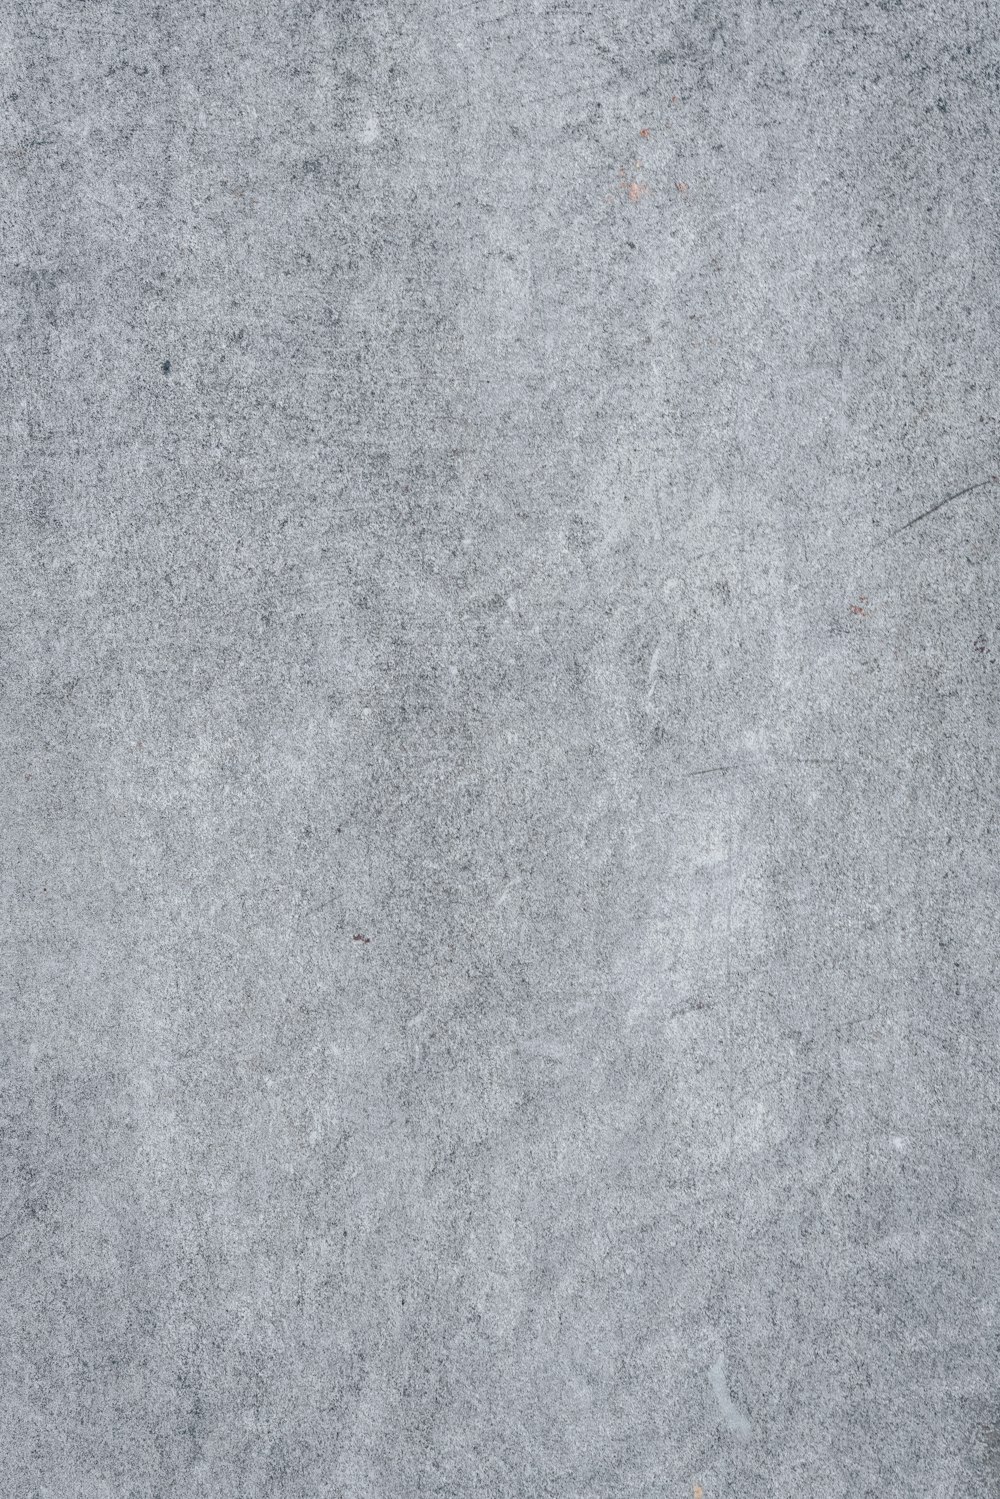 um close up de uma superfície de concreto cinza